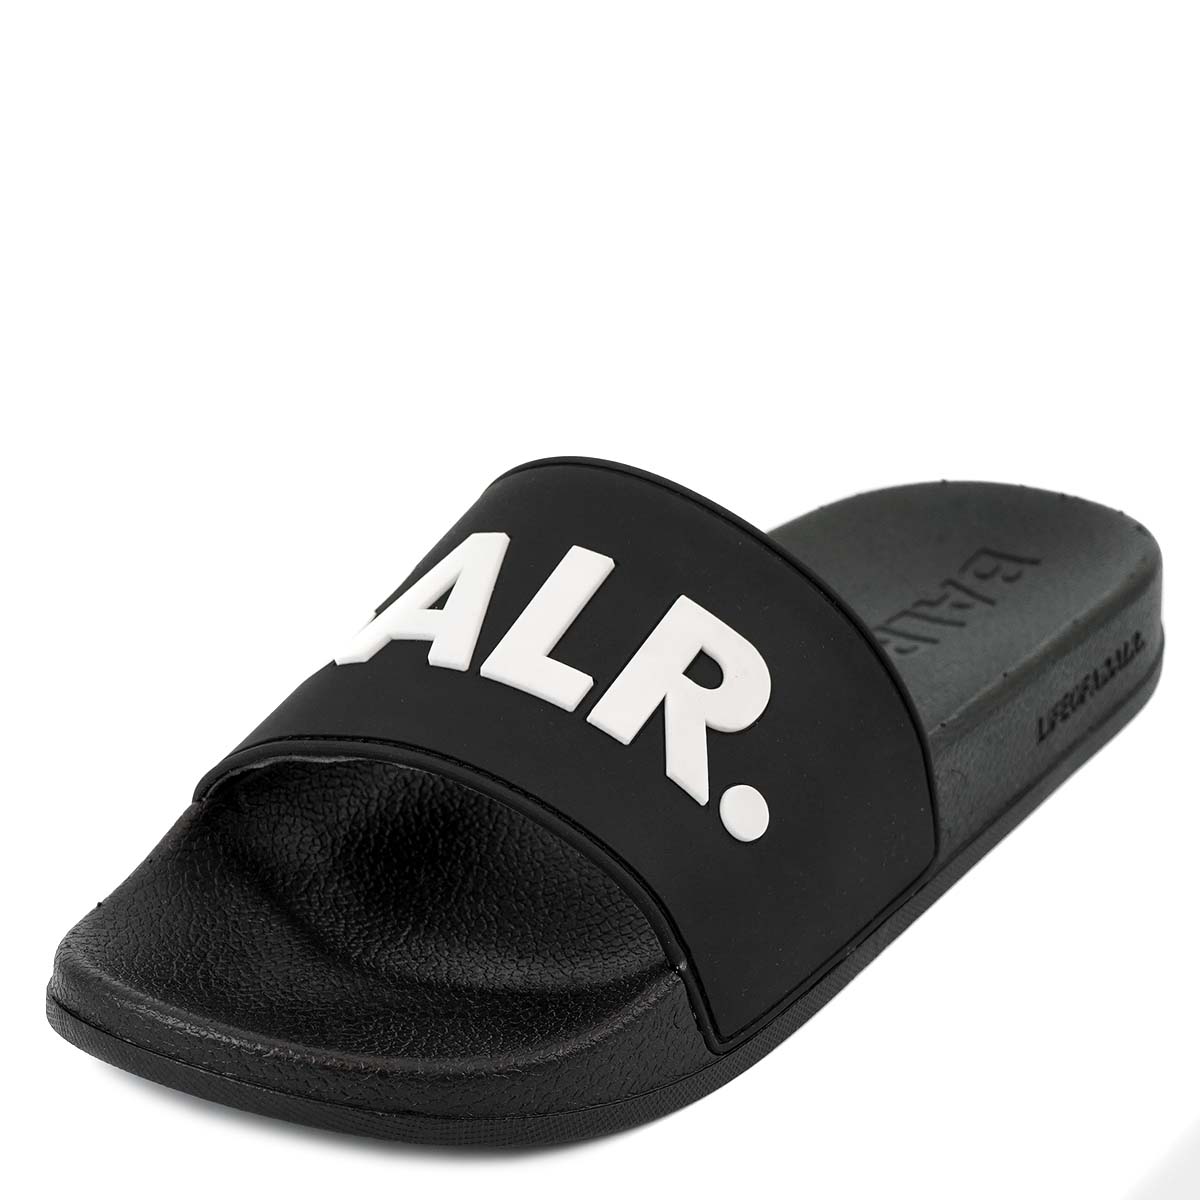 シャワーサンダル BALR ボーラー B10247 BALR. Slider メンズ 男性 レディース 女性 スライドサンダル 靴  Black/White ブラック×ホワイト | インポートショップTERESA